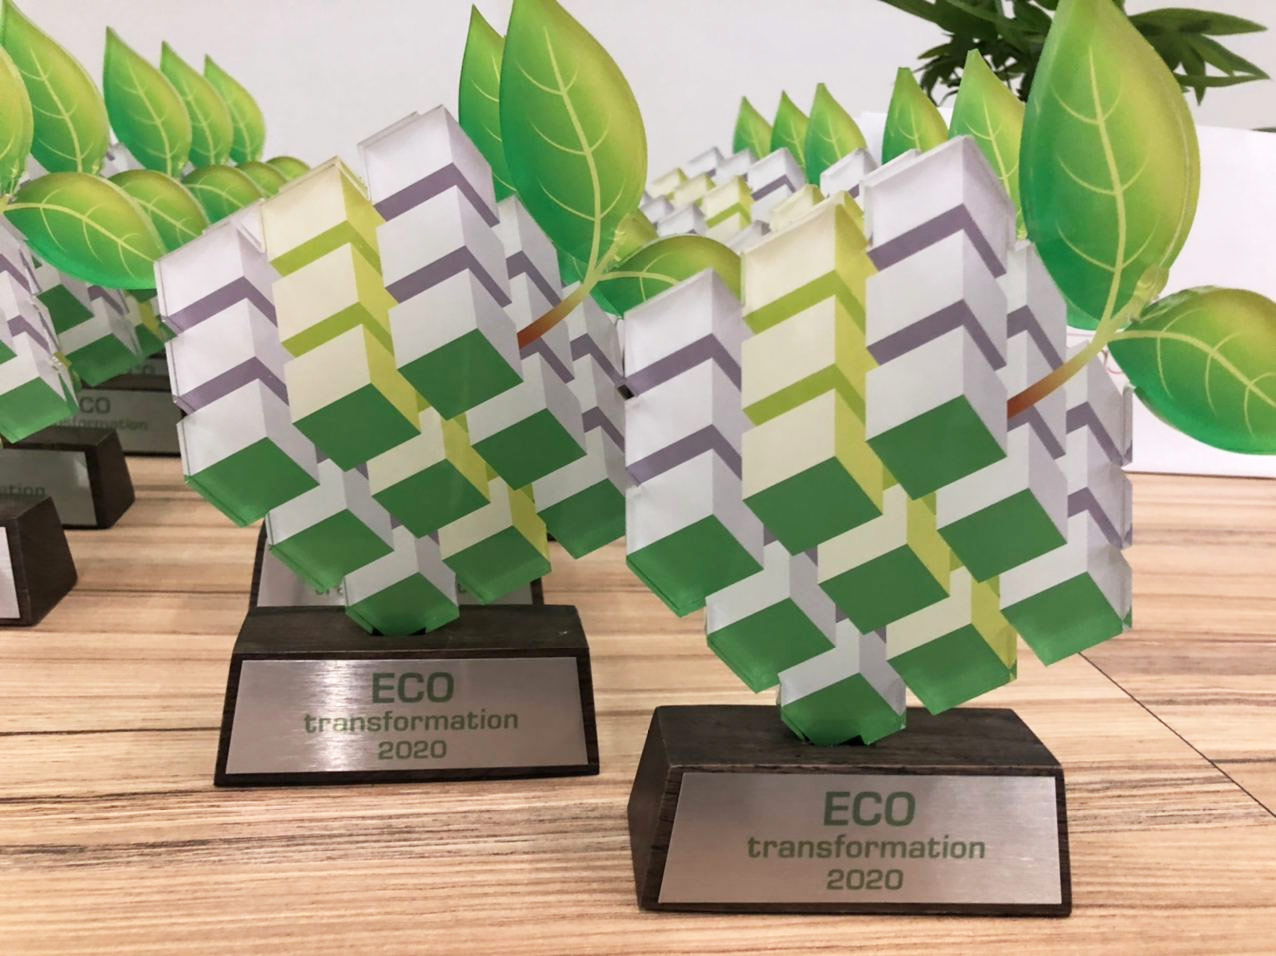 2020 року група ДТЕК отримала нагороду «Екотрансформація» за системну й послідовну природоохоронну діяльність